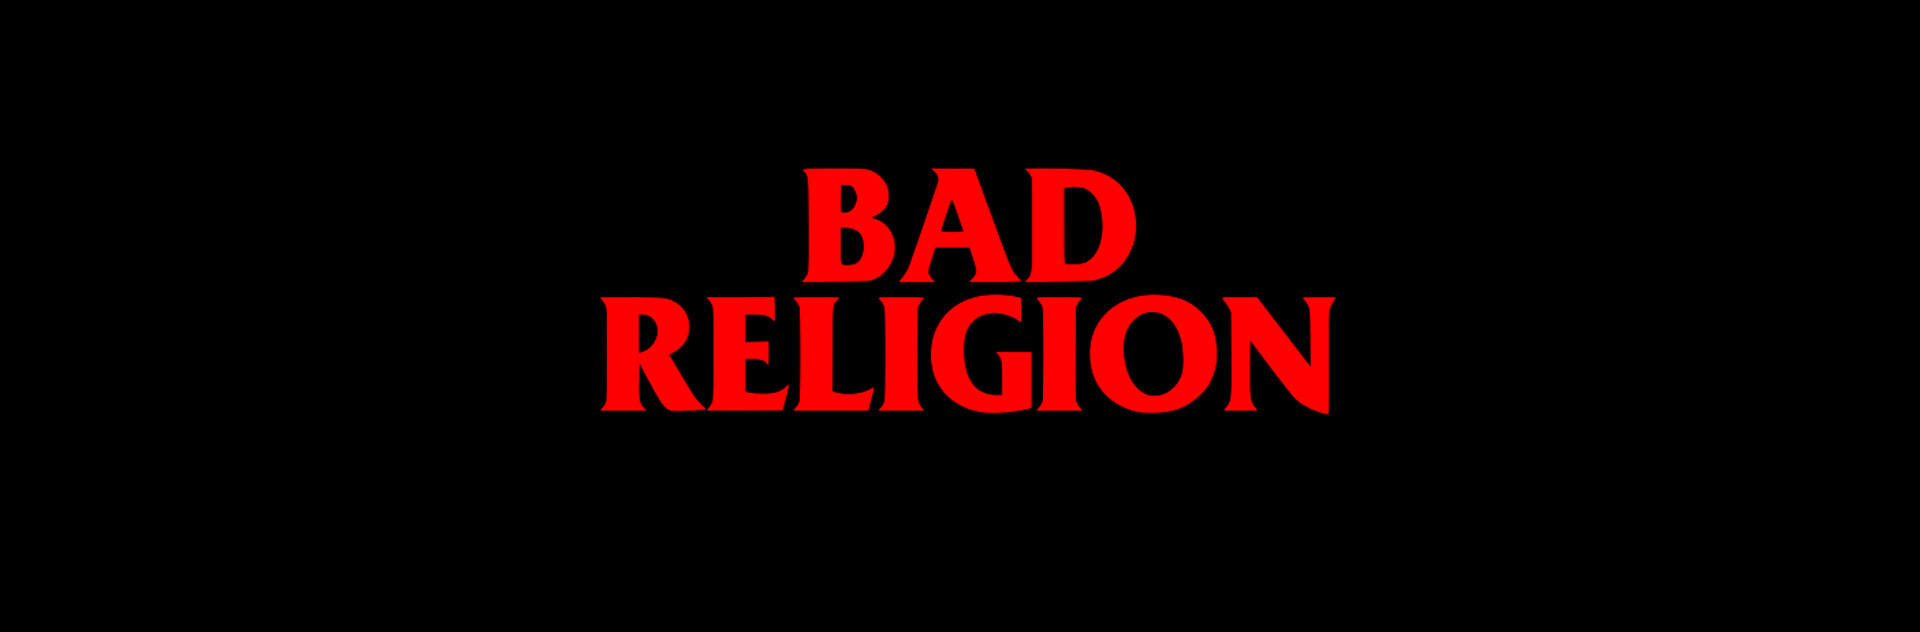 schlechte religion tapete,text,schriftart,schwarz,rot,grafik